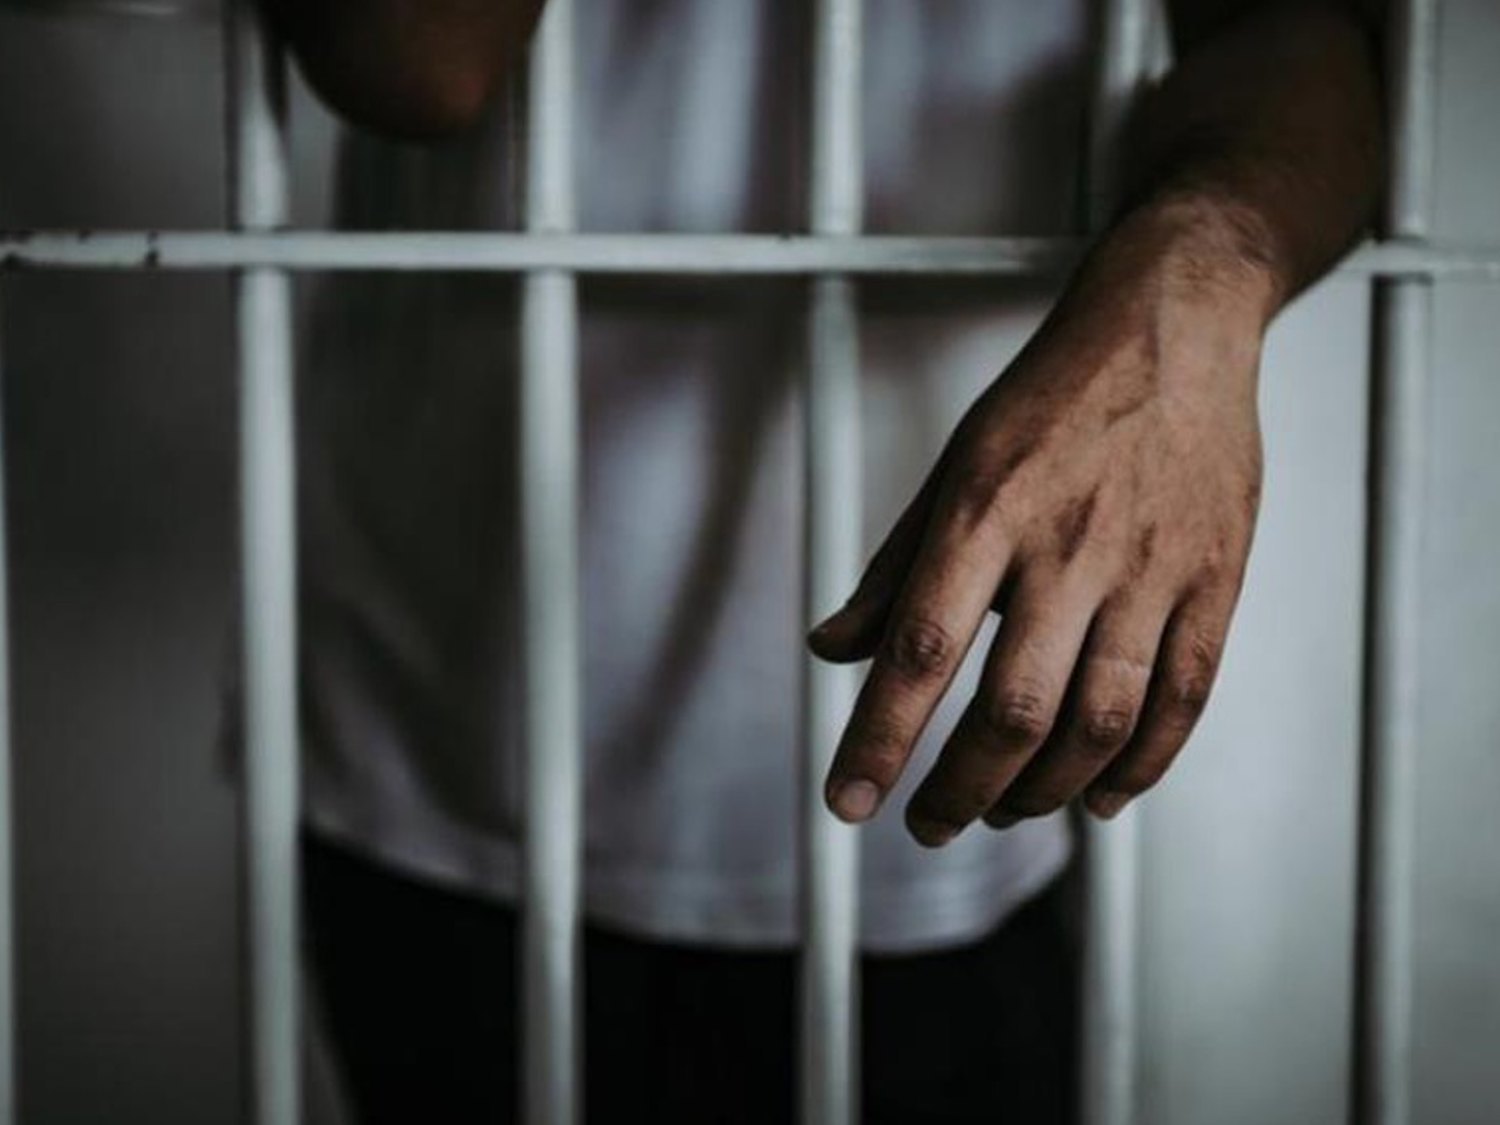 Un preso se amputa el pene después de que su mujer rechazara tener un vis a vis